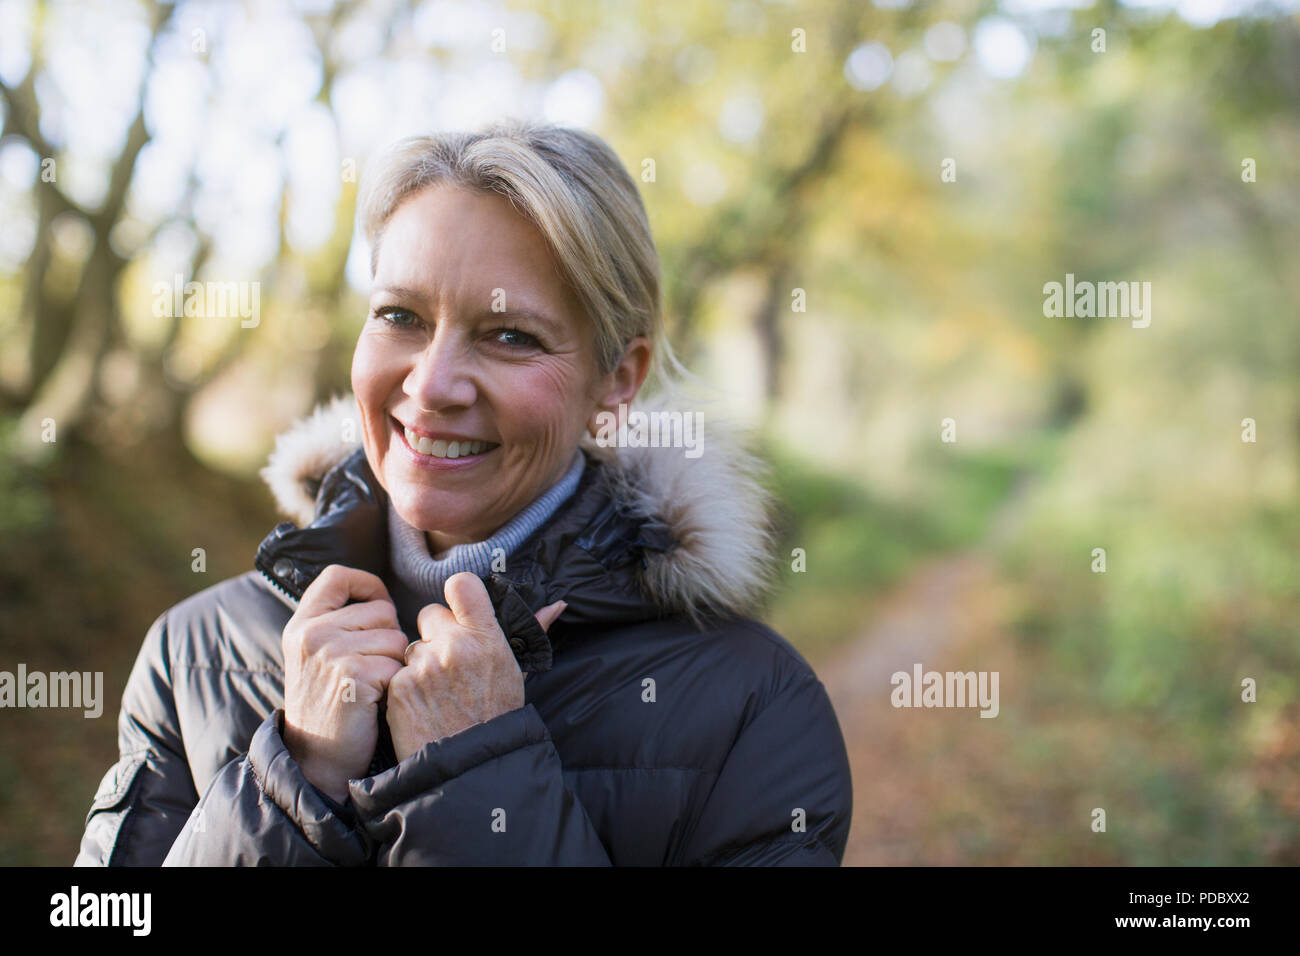 Porträt Lächeln, zuversichtlich, reife Frau in Parka in Wäldern Stockfoto